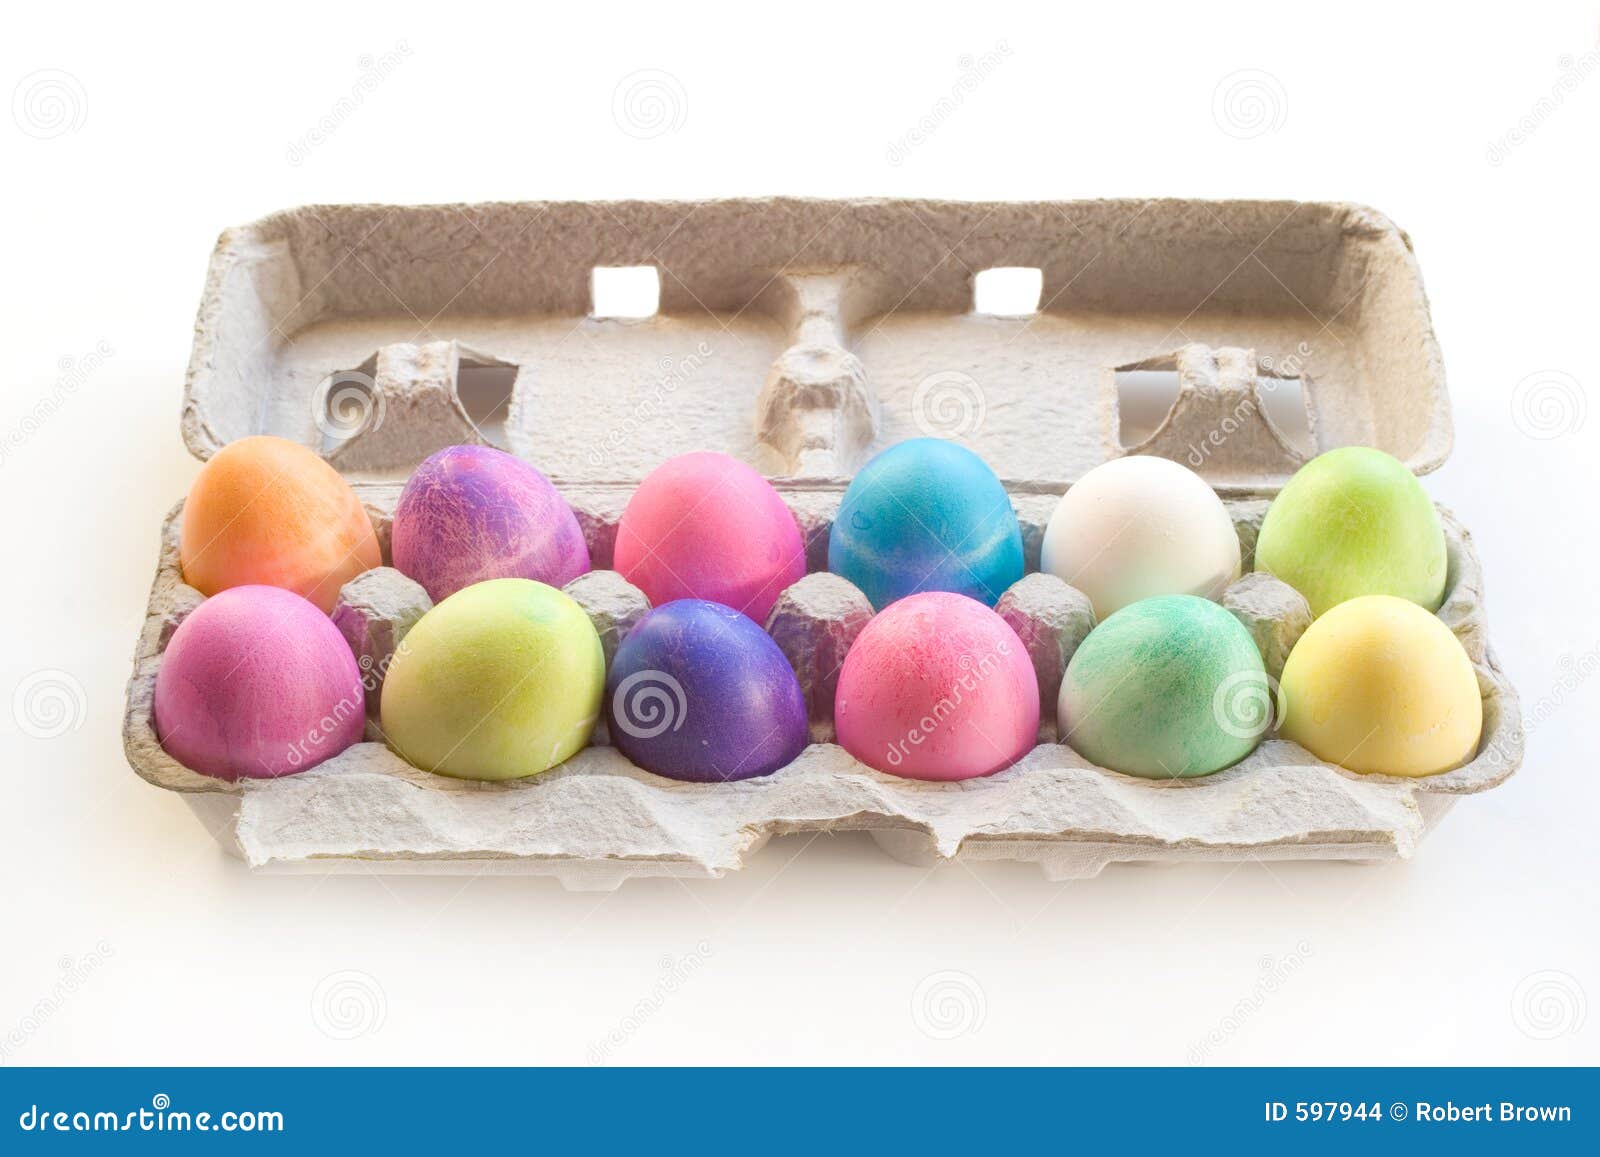 a dozen easter eggs